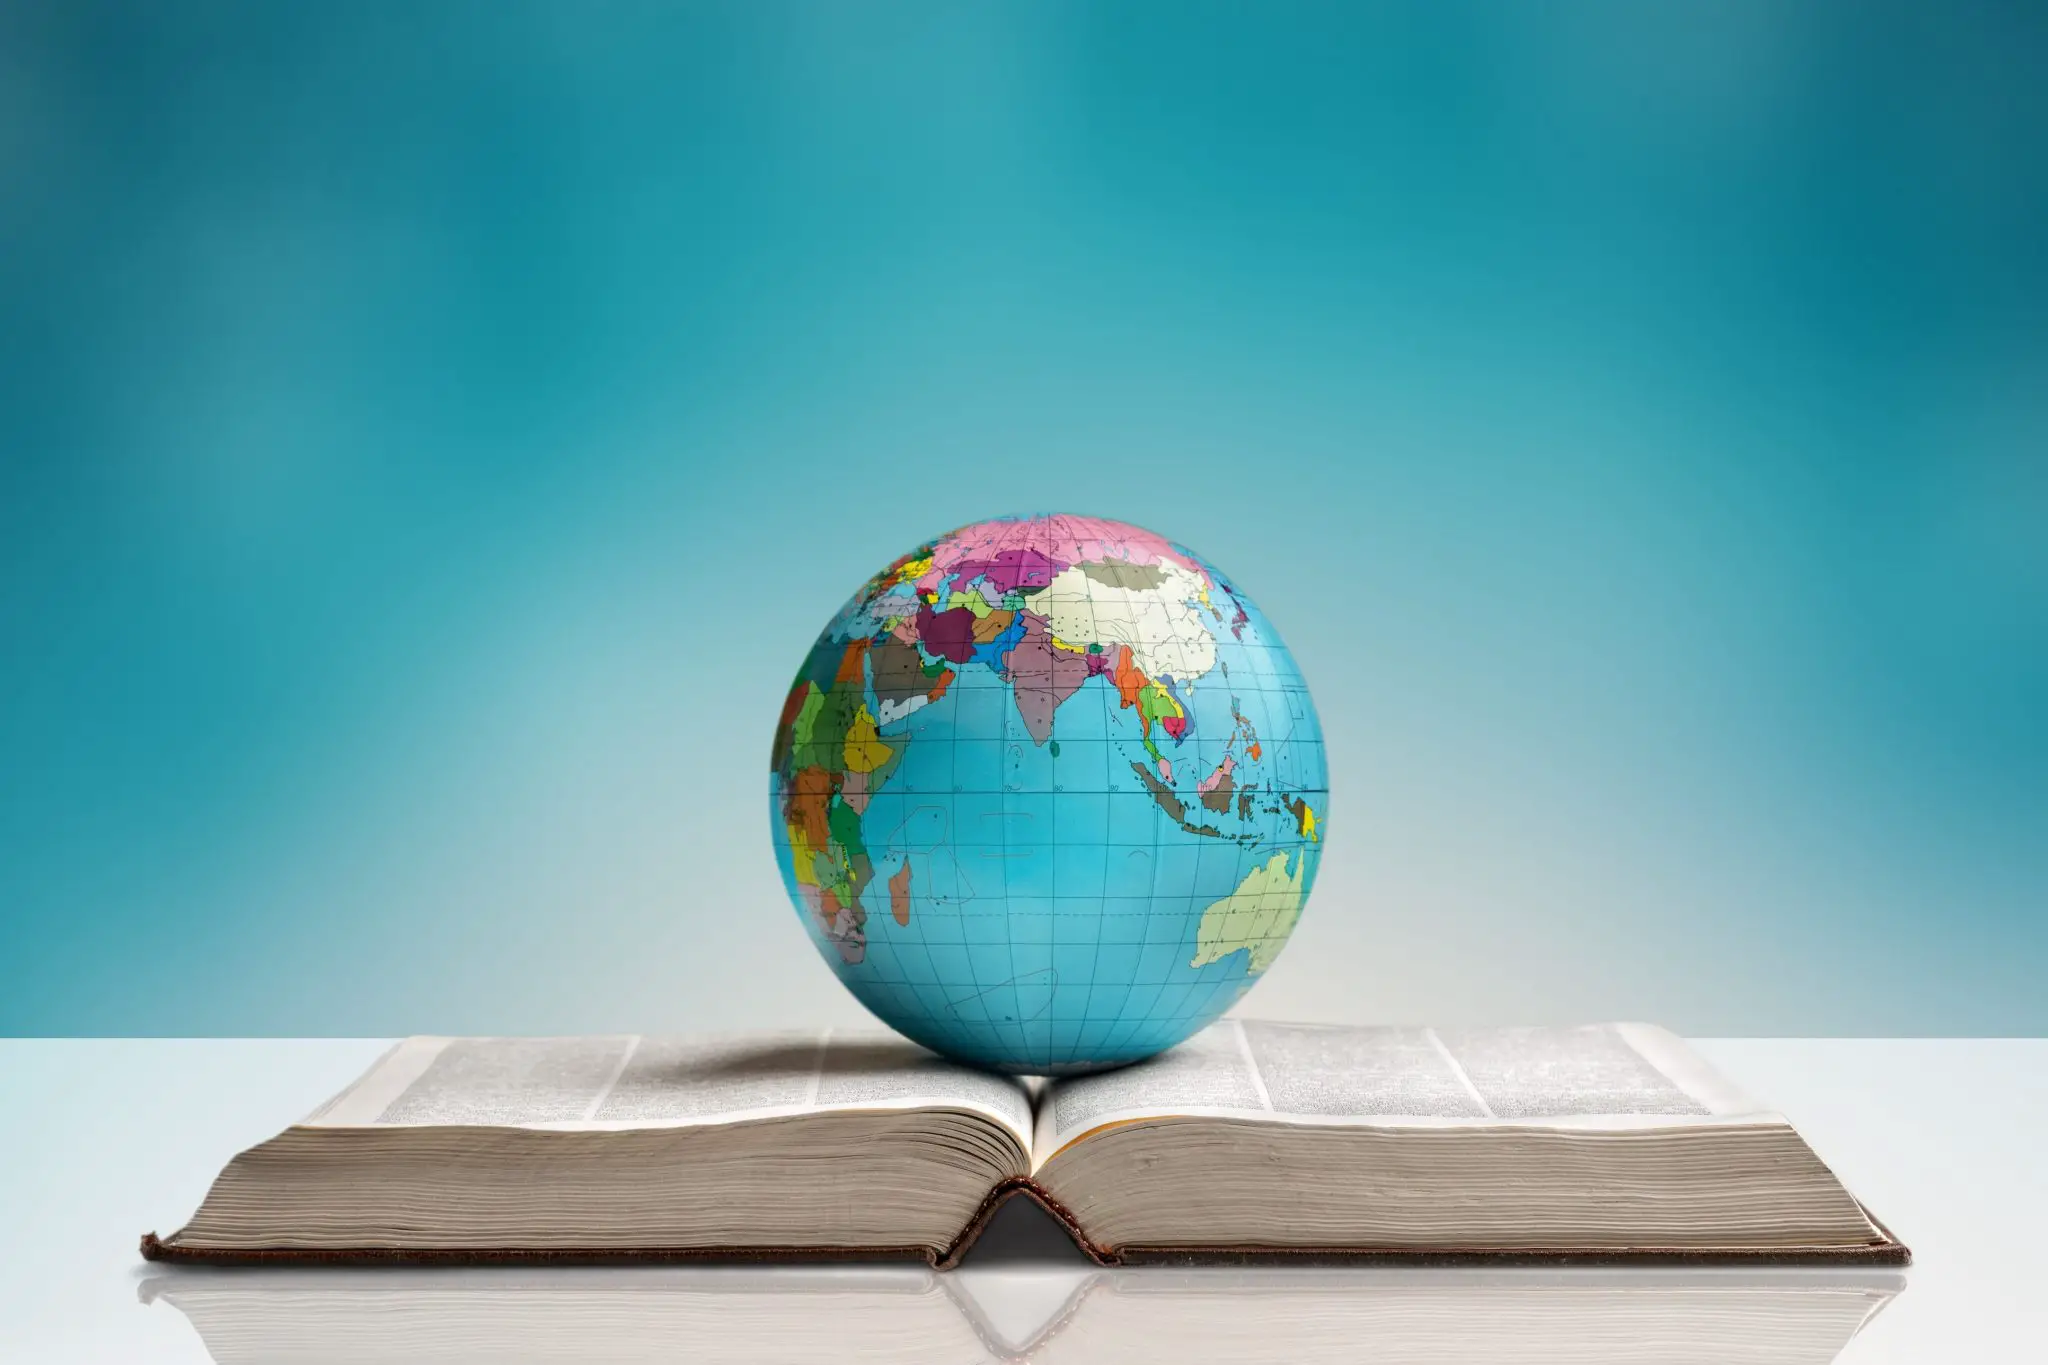 Globe on a book